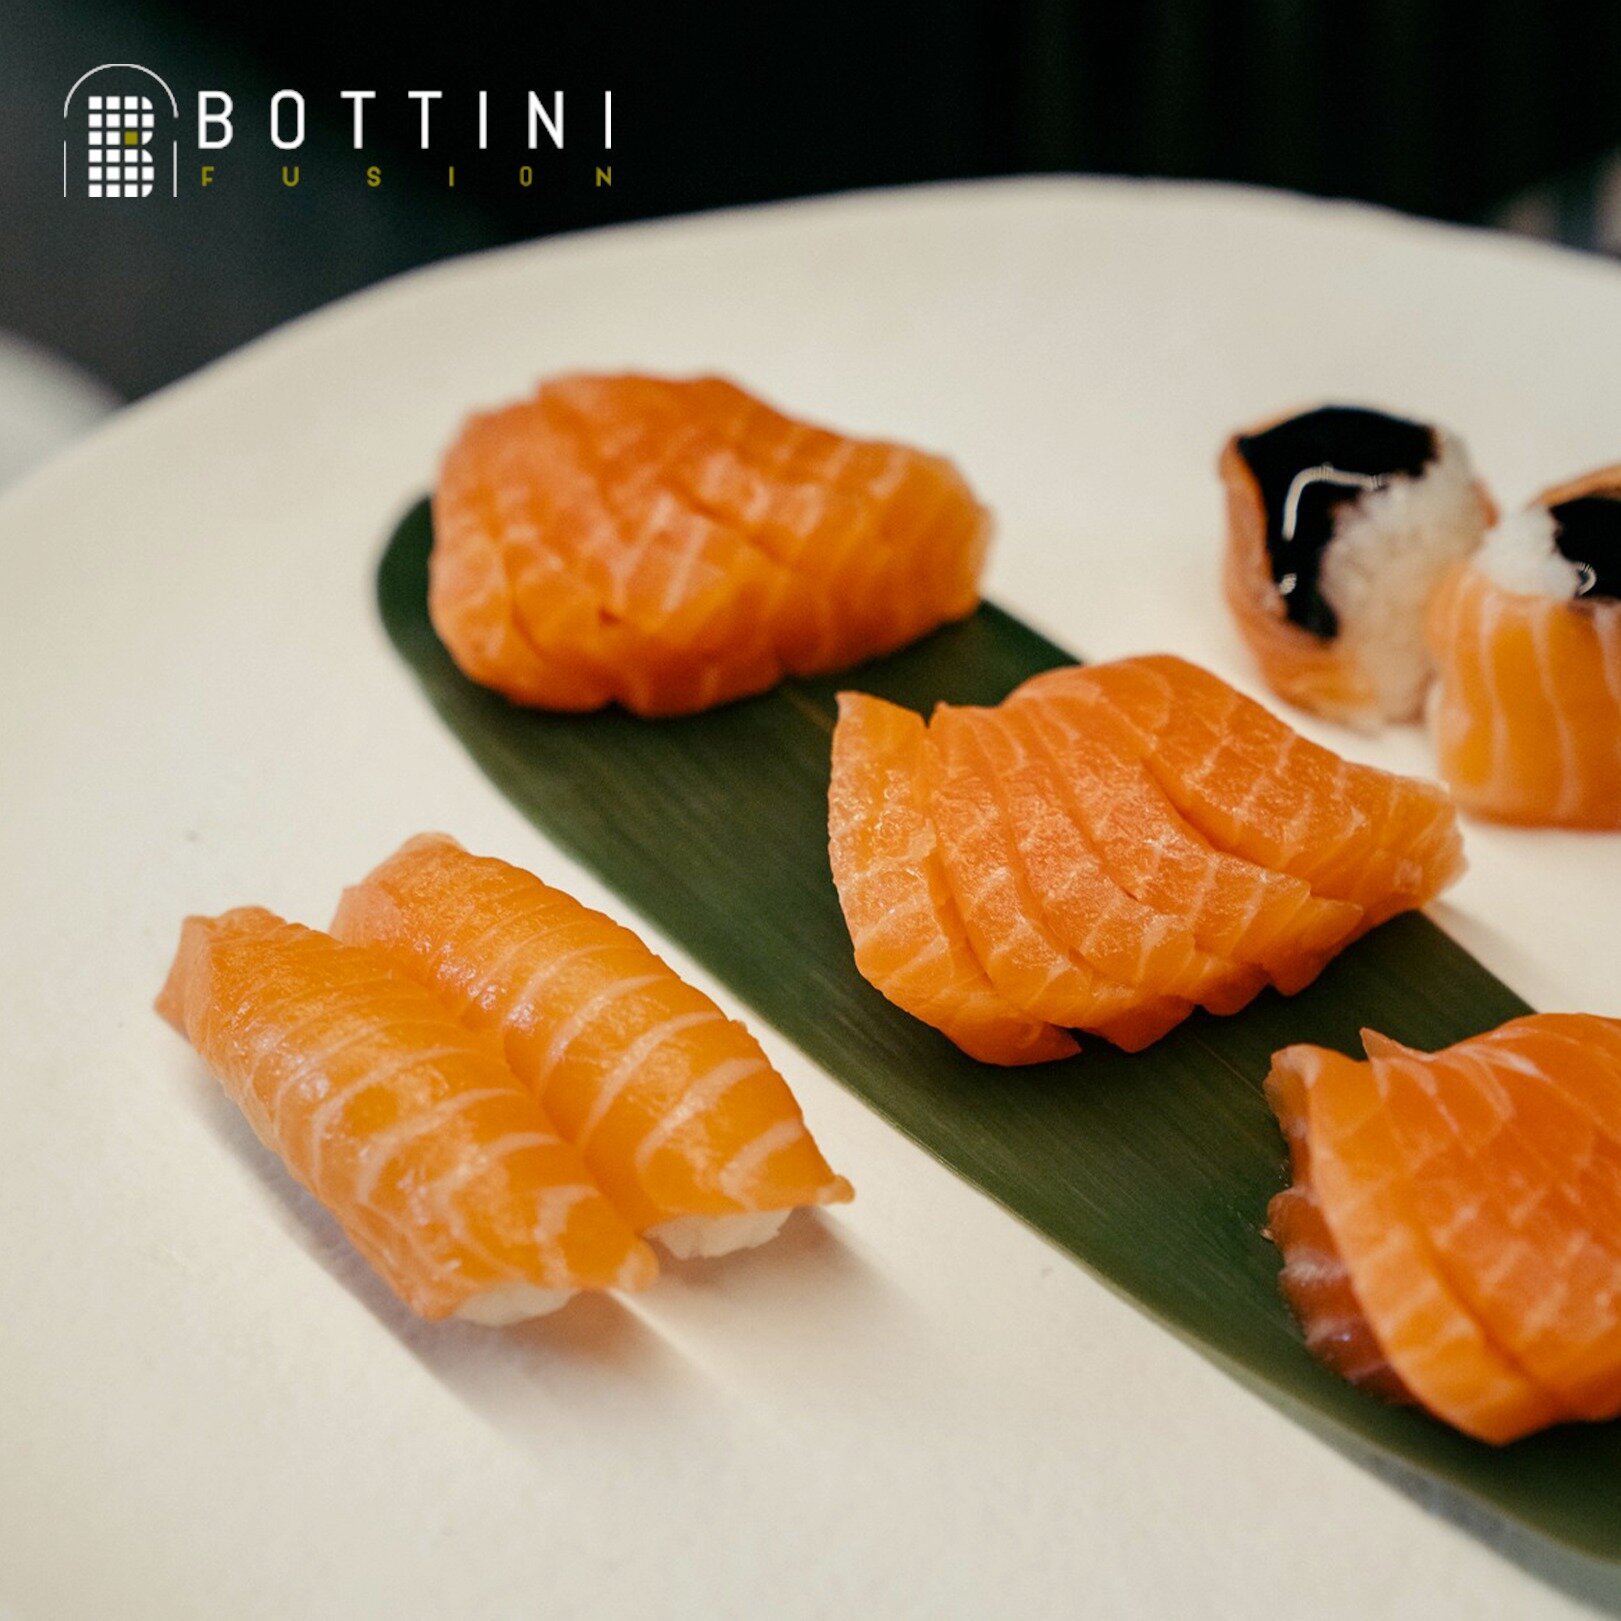 Il paradiso del Salmoneee 🤩

E voi cosa preferite, il salmone o il tonno? Raggiungici da Bottini Fusion, siamo aperti sia a pranzo che a cena!
.
.
.
.
.
.
.
#sushitime #sushilovers #food #foodporn #delivery
#japanesefood #instafood #sashimi #sushilo